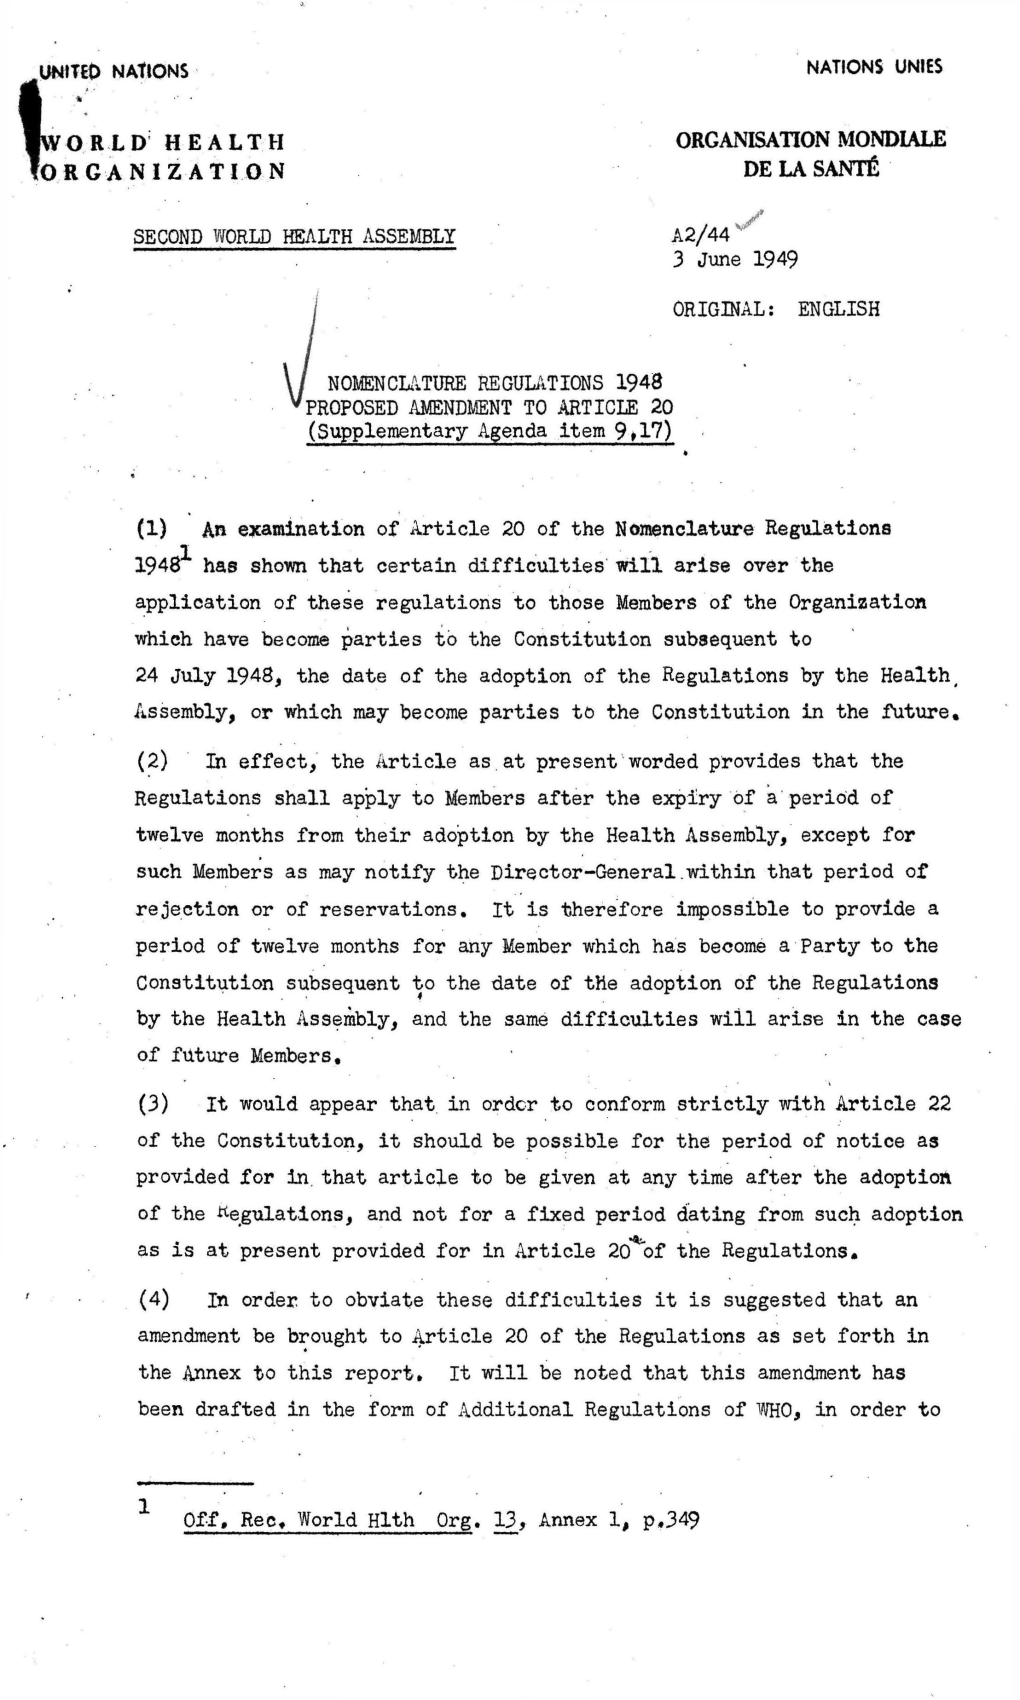 English Nomenclature Regulations 1948 Proposed